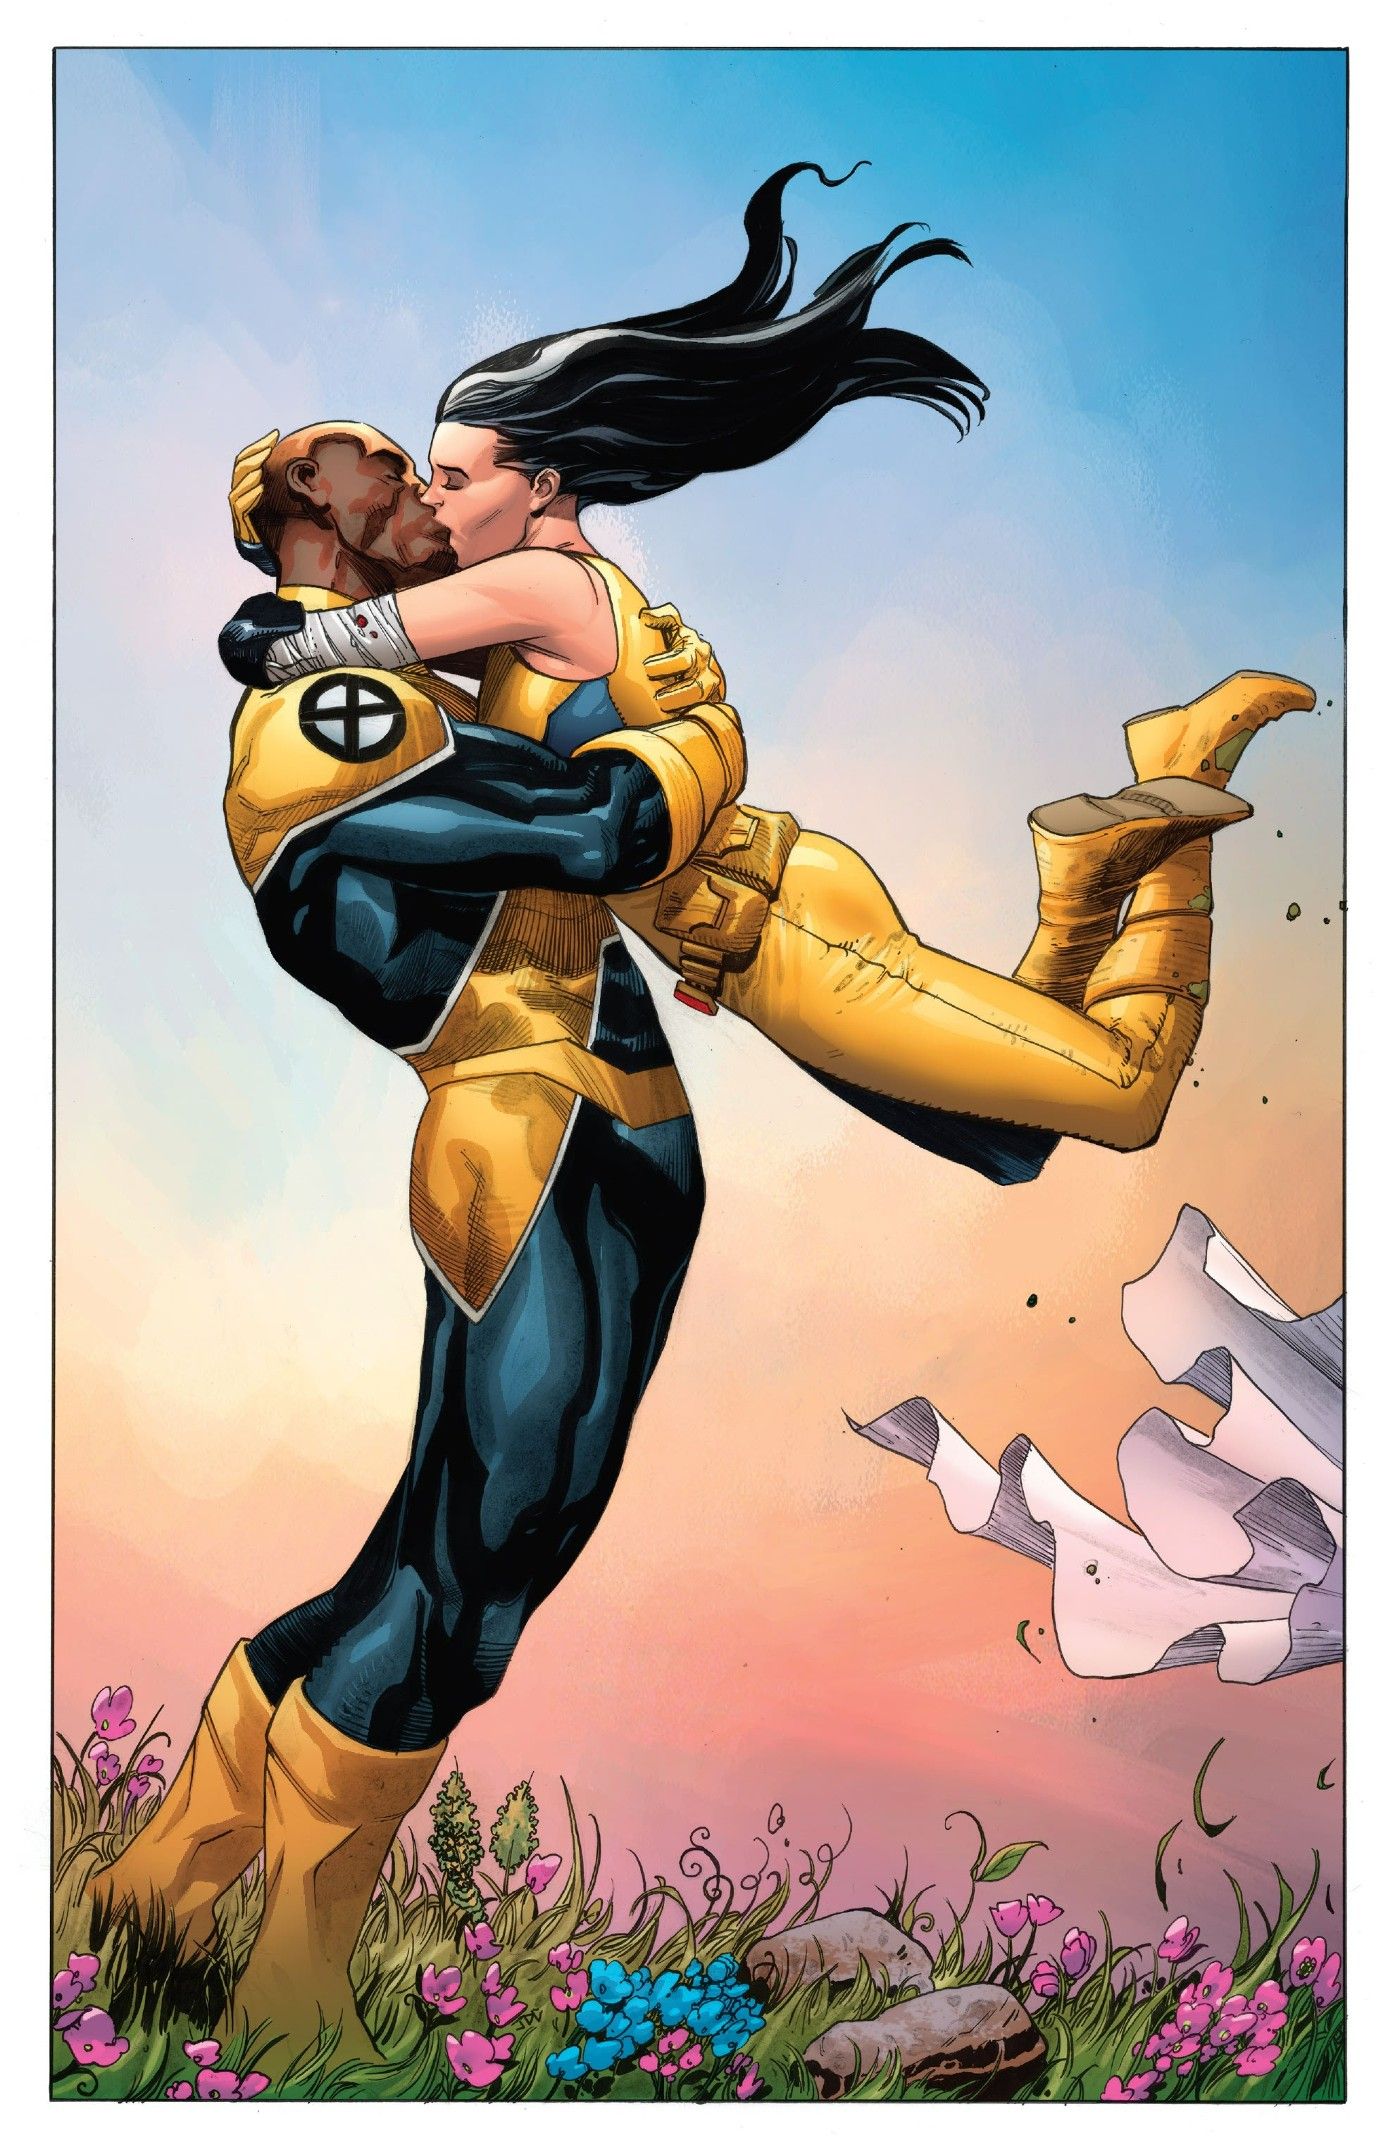 X-Men’s Most Tragic Romance Gets the Heartwarming Twist Fans Demanded